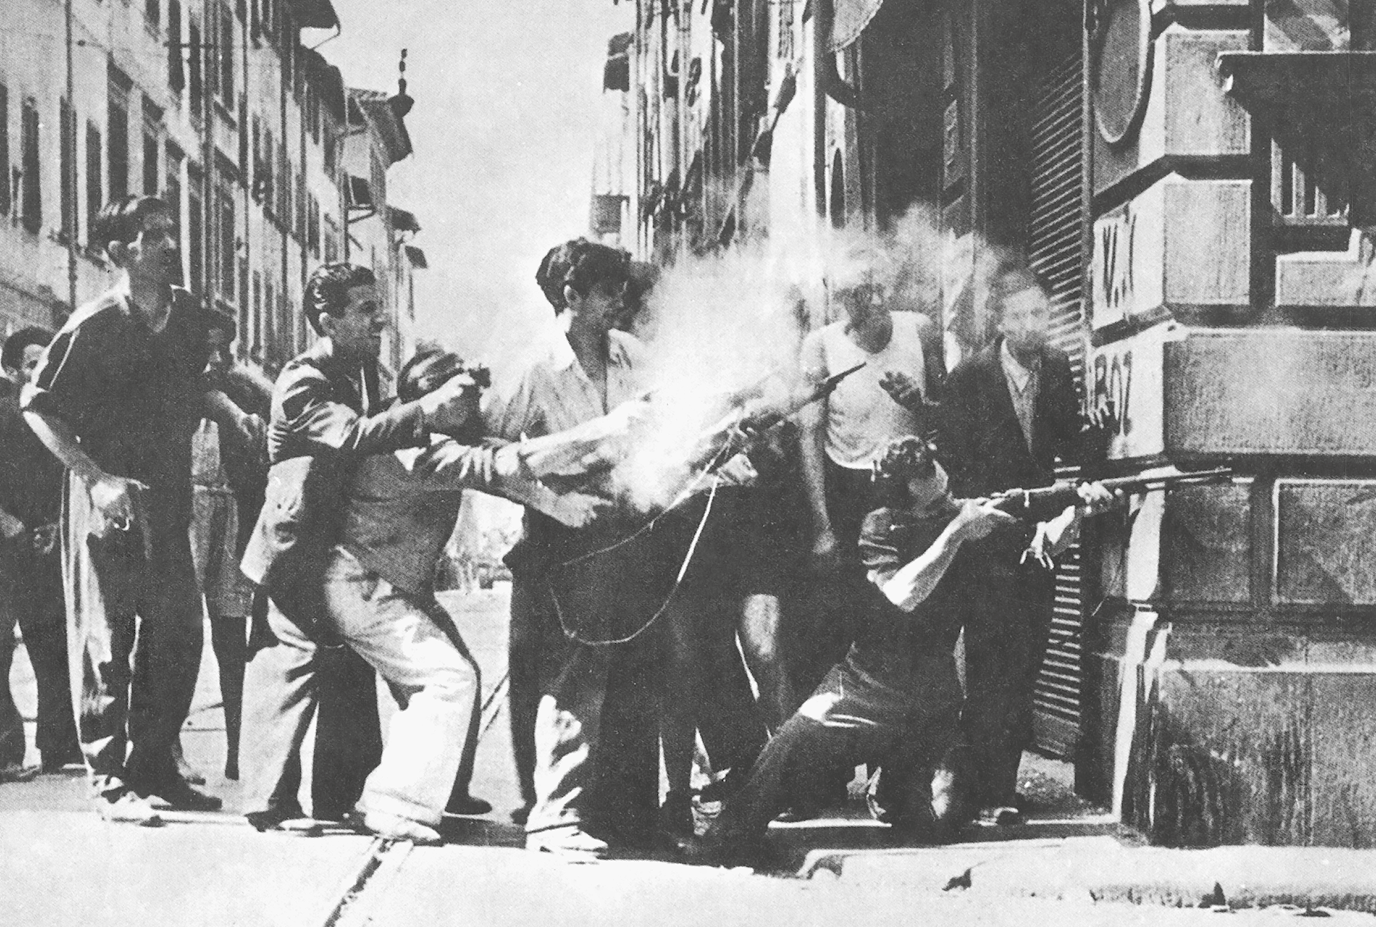 Fotografia em preto e branco. Homens empunhando armas em uma esquina. Um deles está ajoelhado, apontando a arma, com o corpo parcialmente atrás da parede de uma construção. Outros observam.